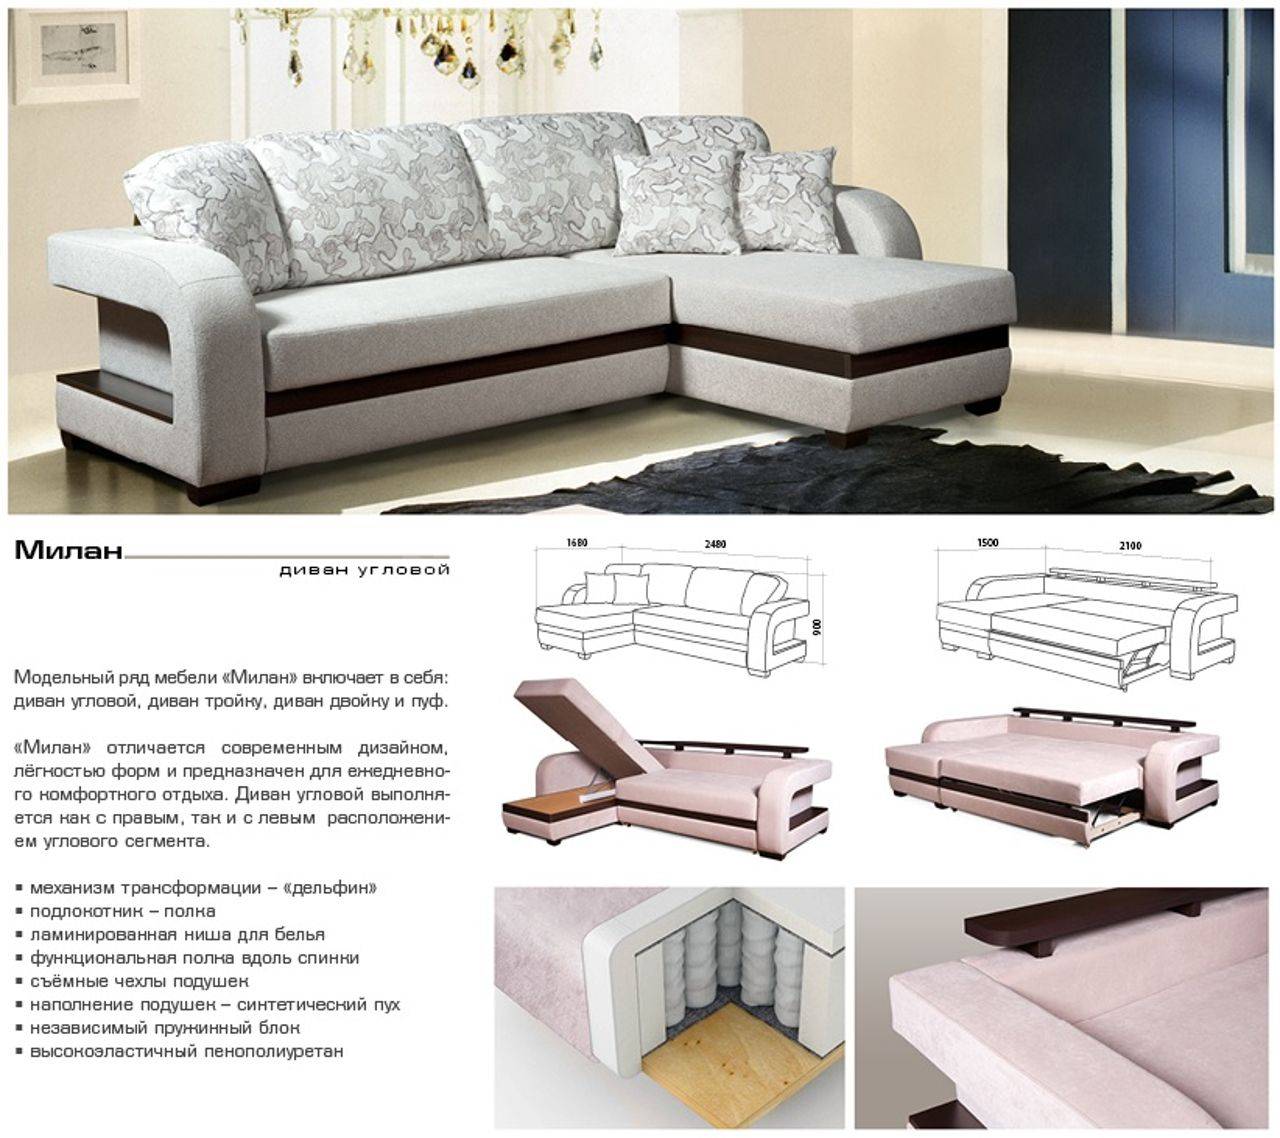 Угловой диван: размеры для гостиной, виды и особенности конструкции